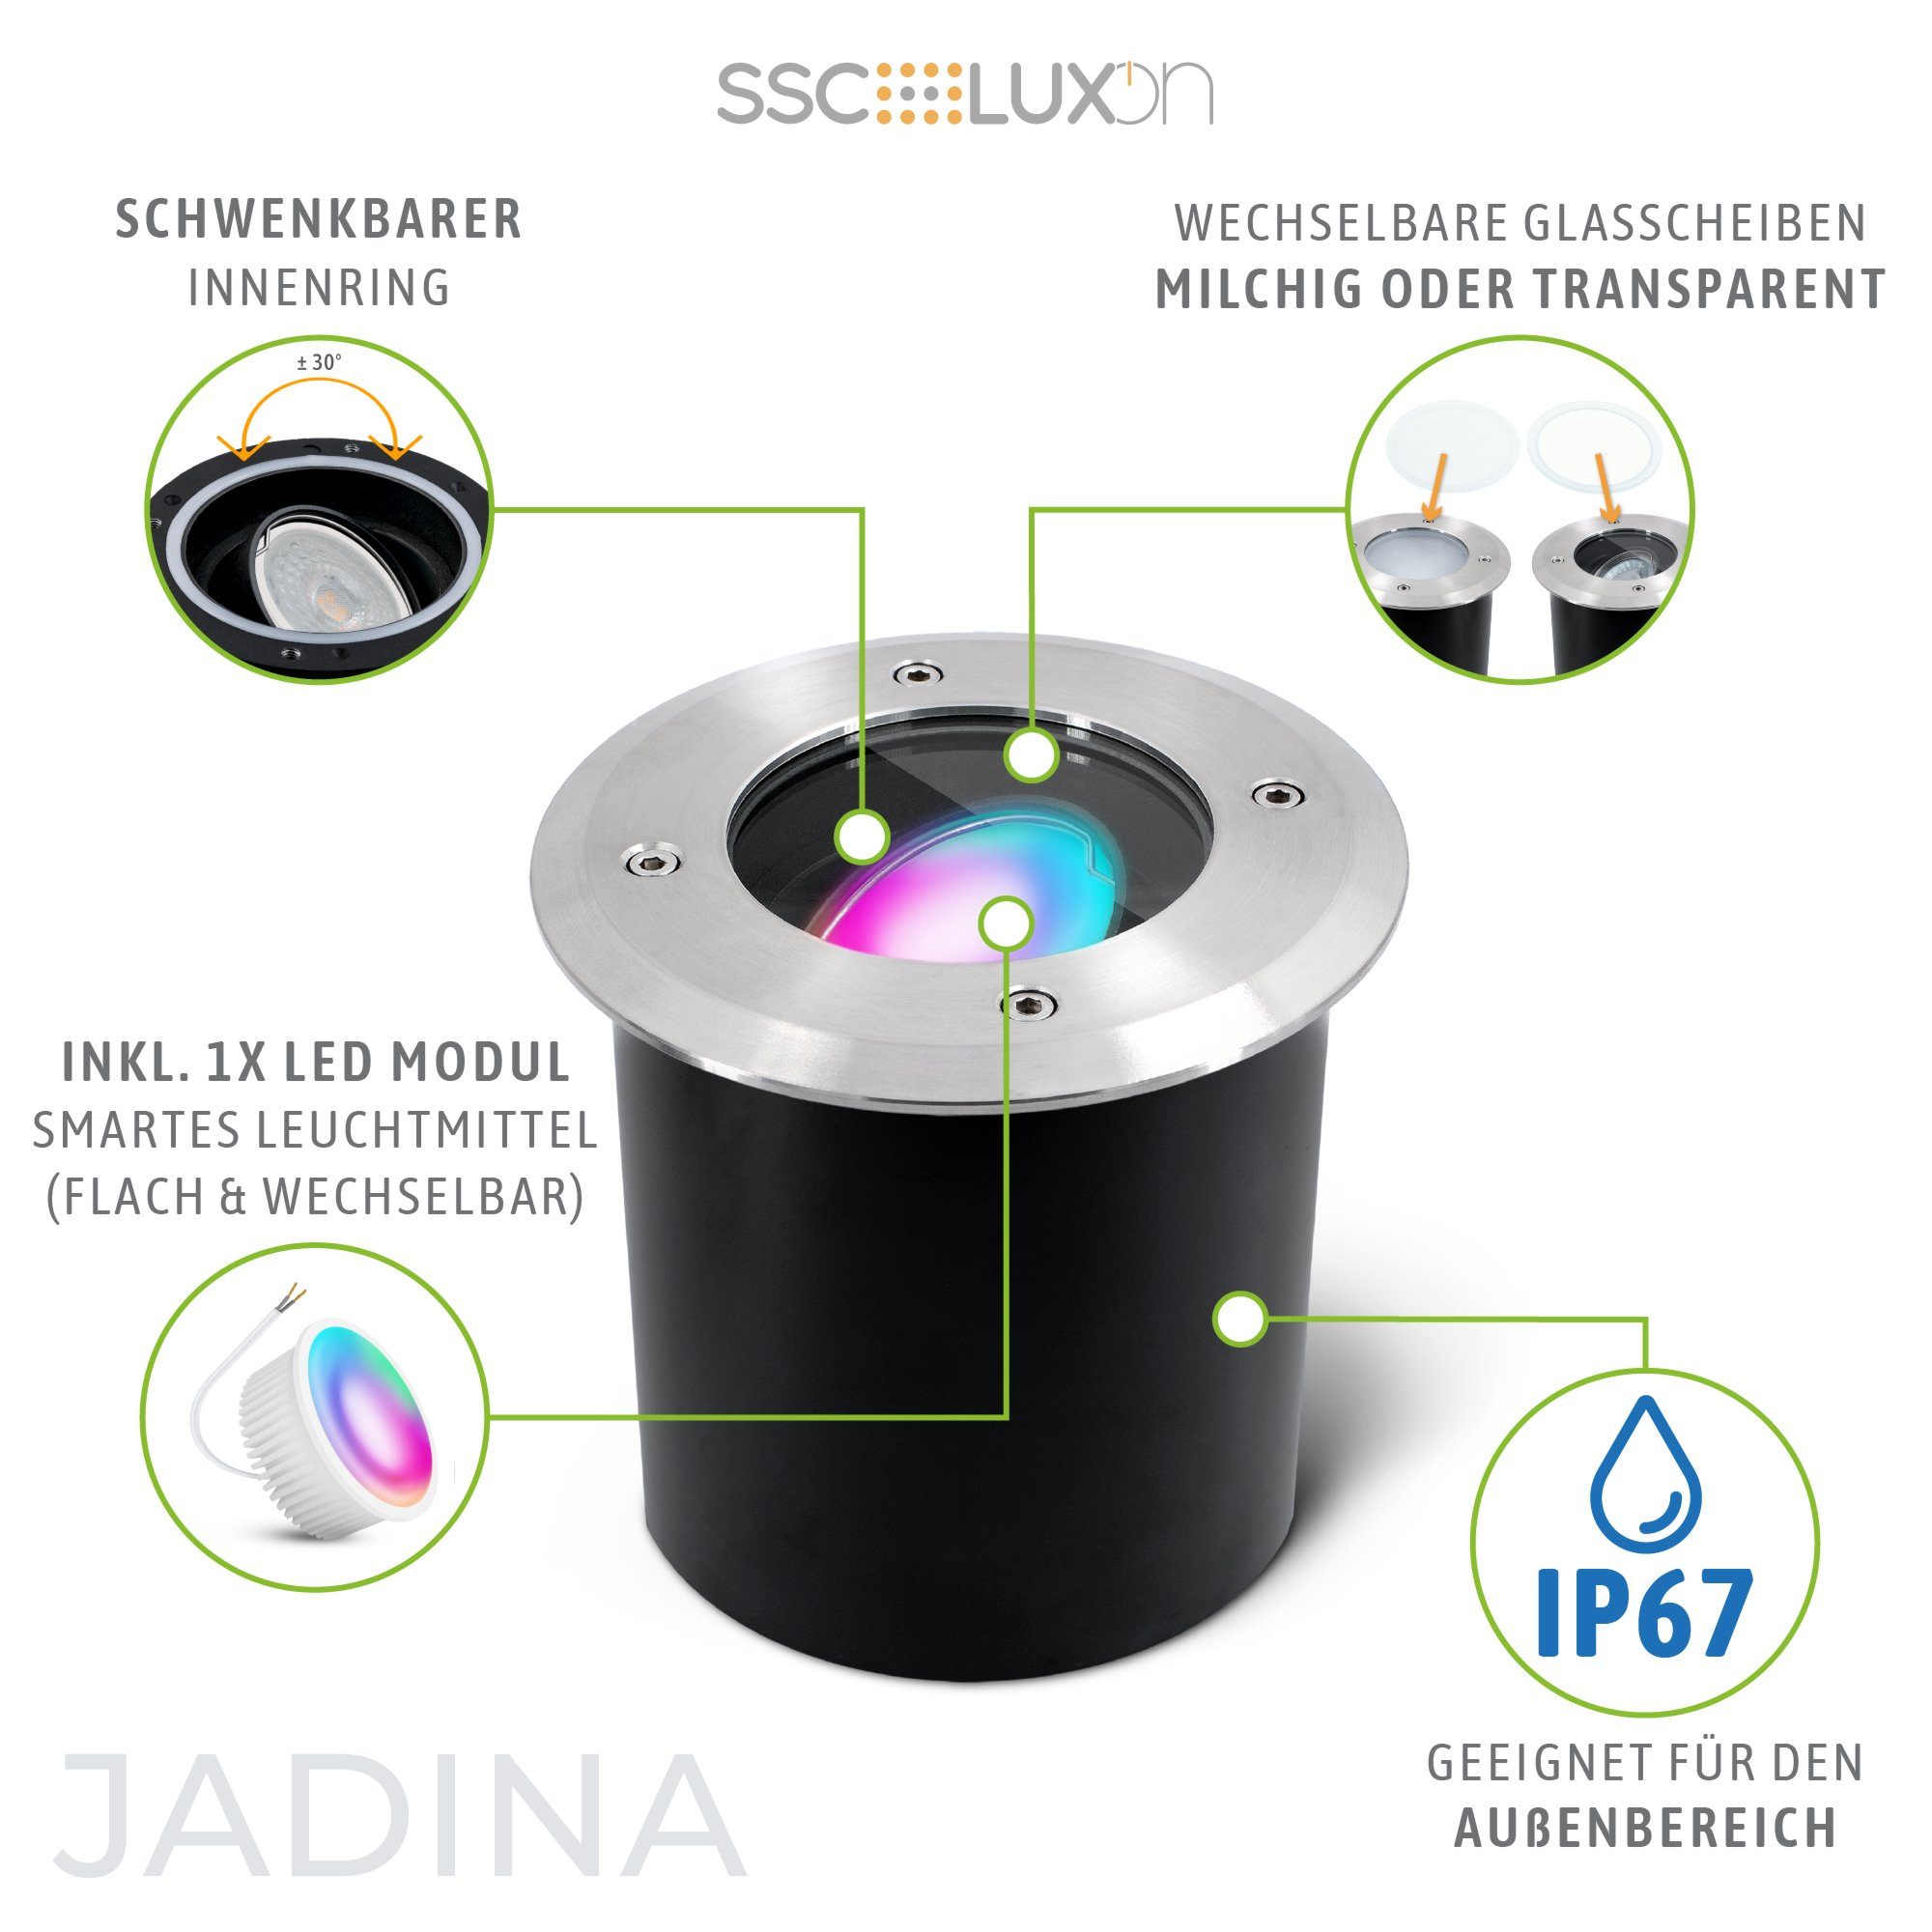 LED flache Bodeneinbauleuchte Gartenstrahler SSC-LUXon JADINA Smart RGB, RGB IP67 schwenkbar mit rund